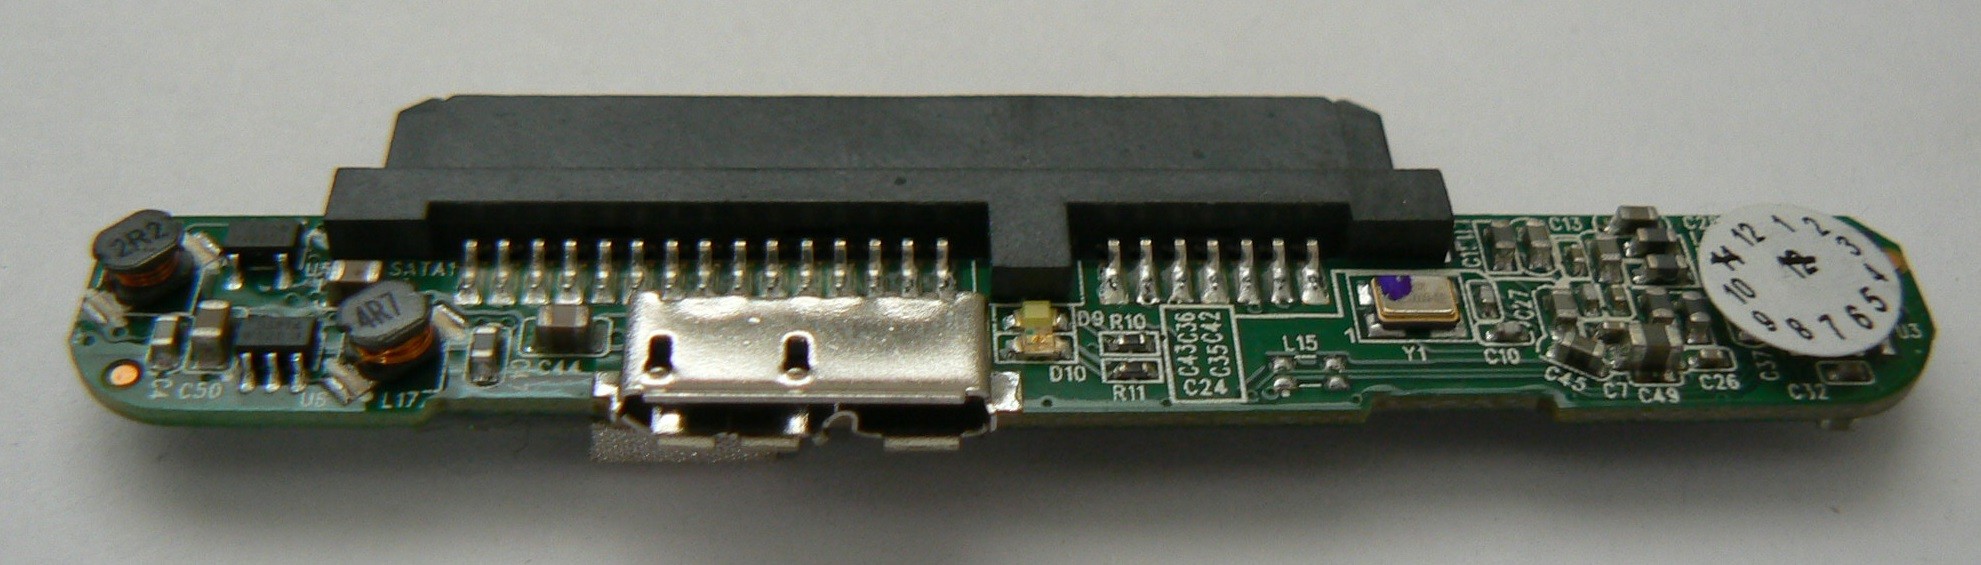 Toshiba Canvio Controller Board 1TB/1.5TB USB 3.0 PI-433 VER 1.4 2011.11.28